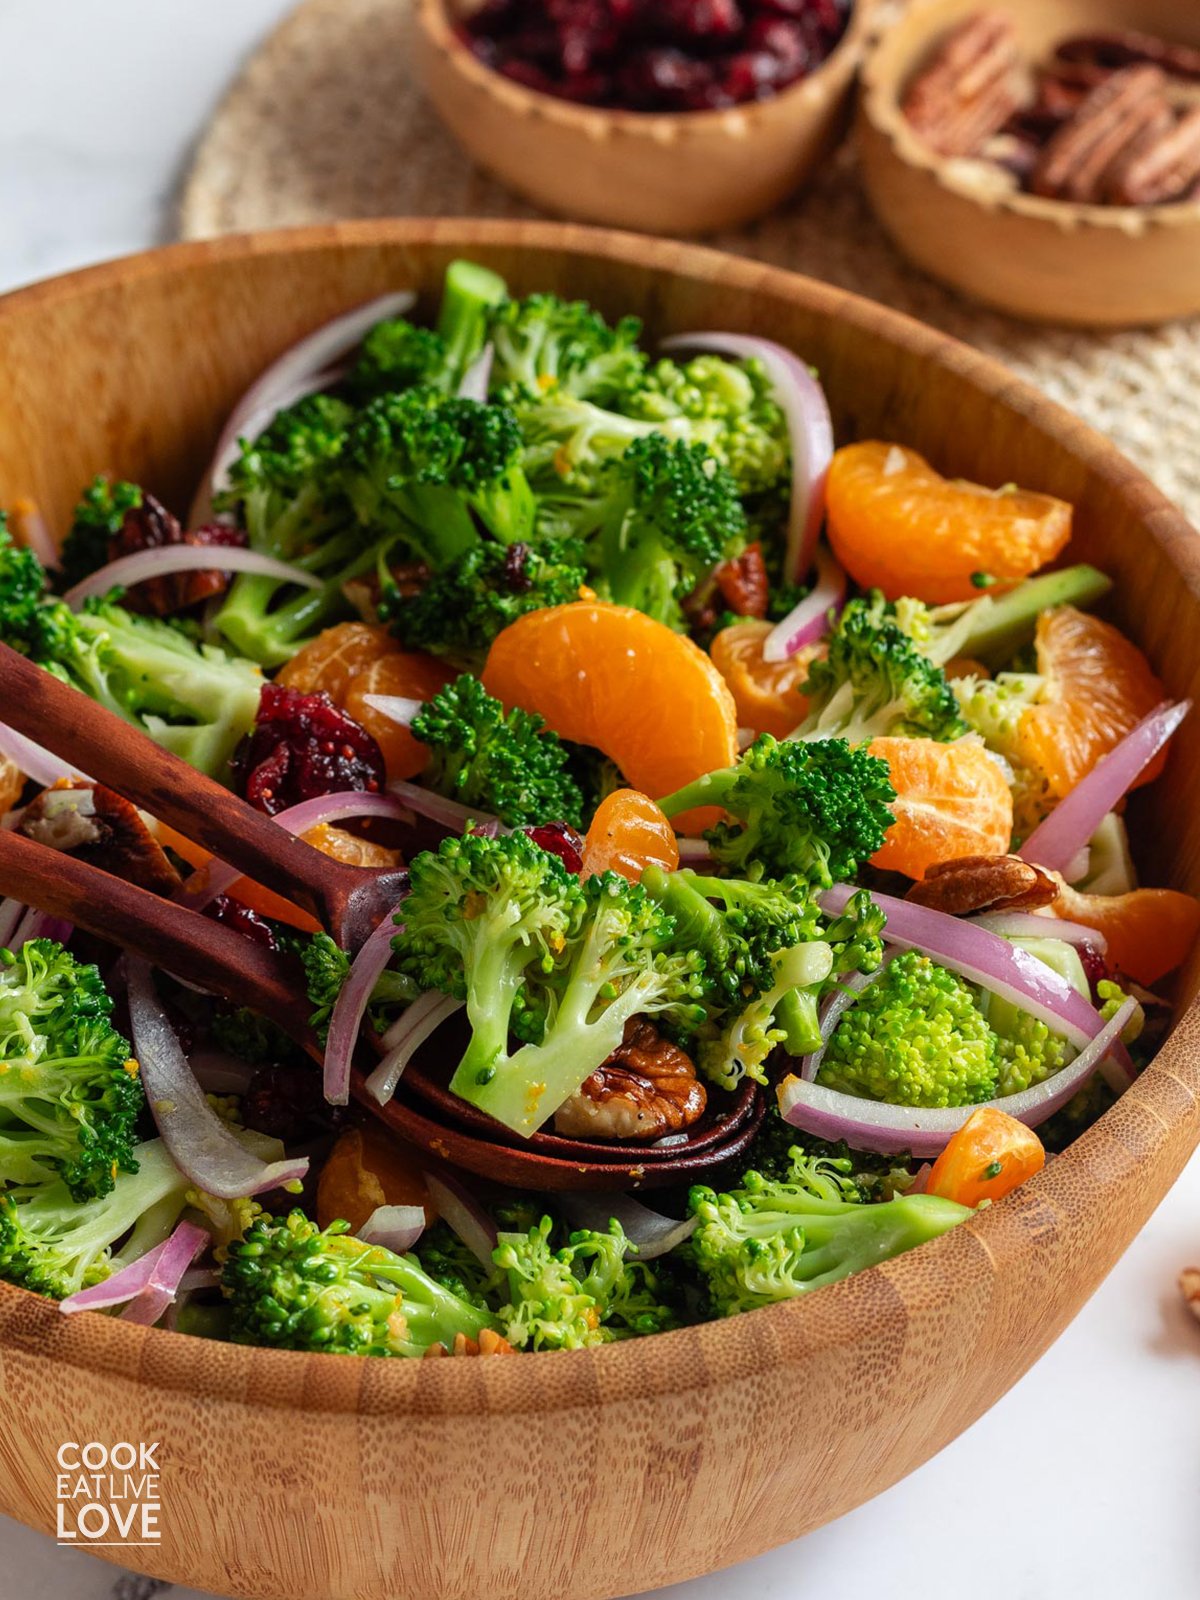 A closeup of cranberry broccoli salad in a wooden bowl.